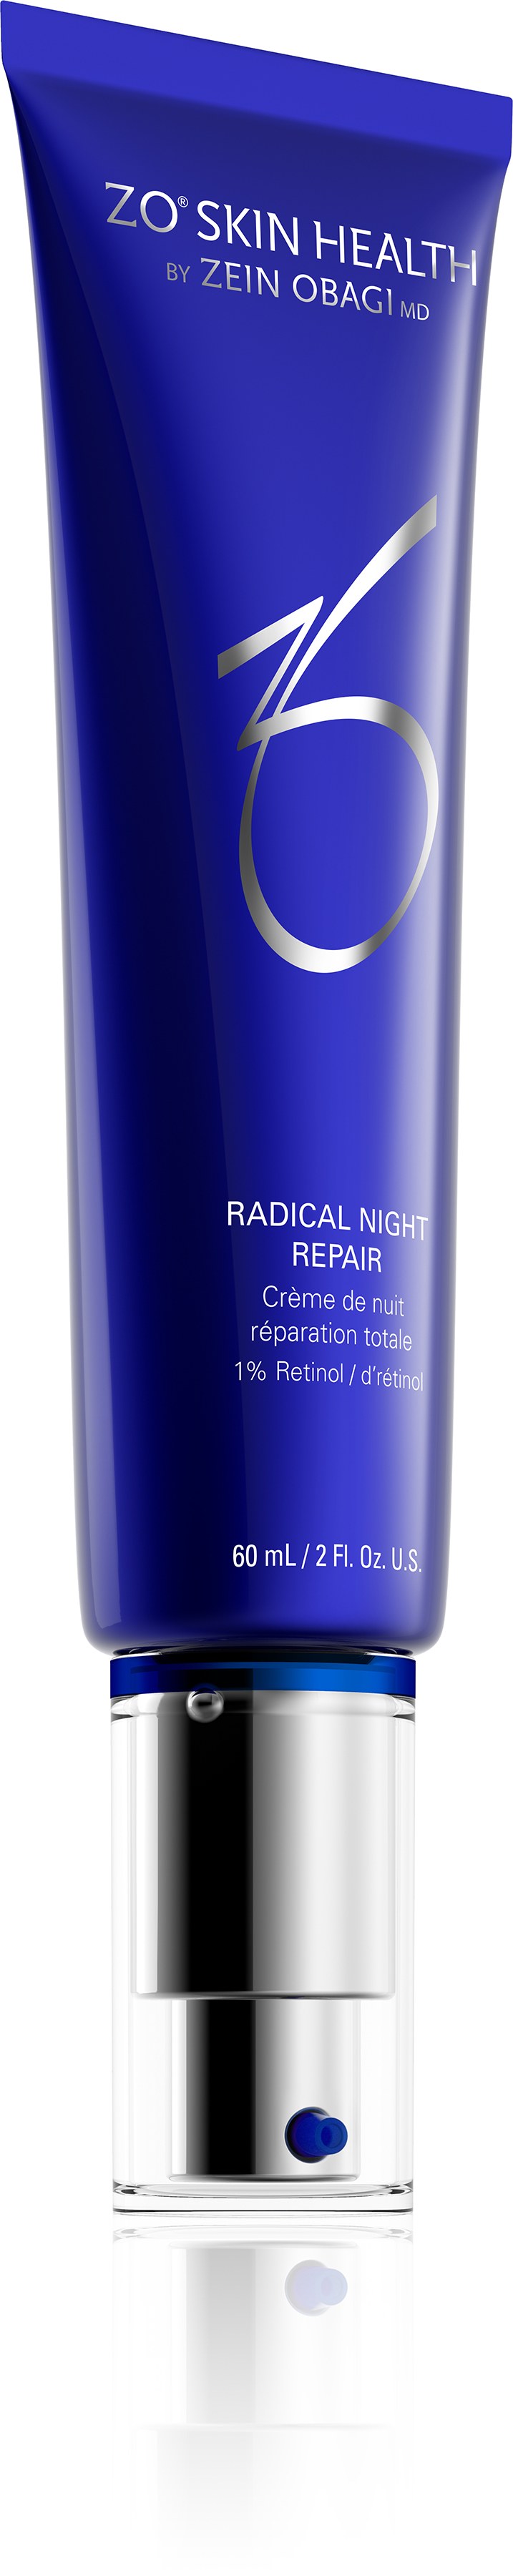 Radical night repair